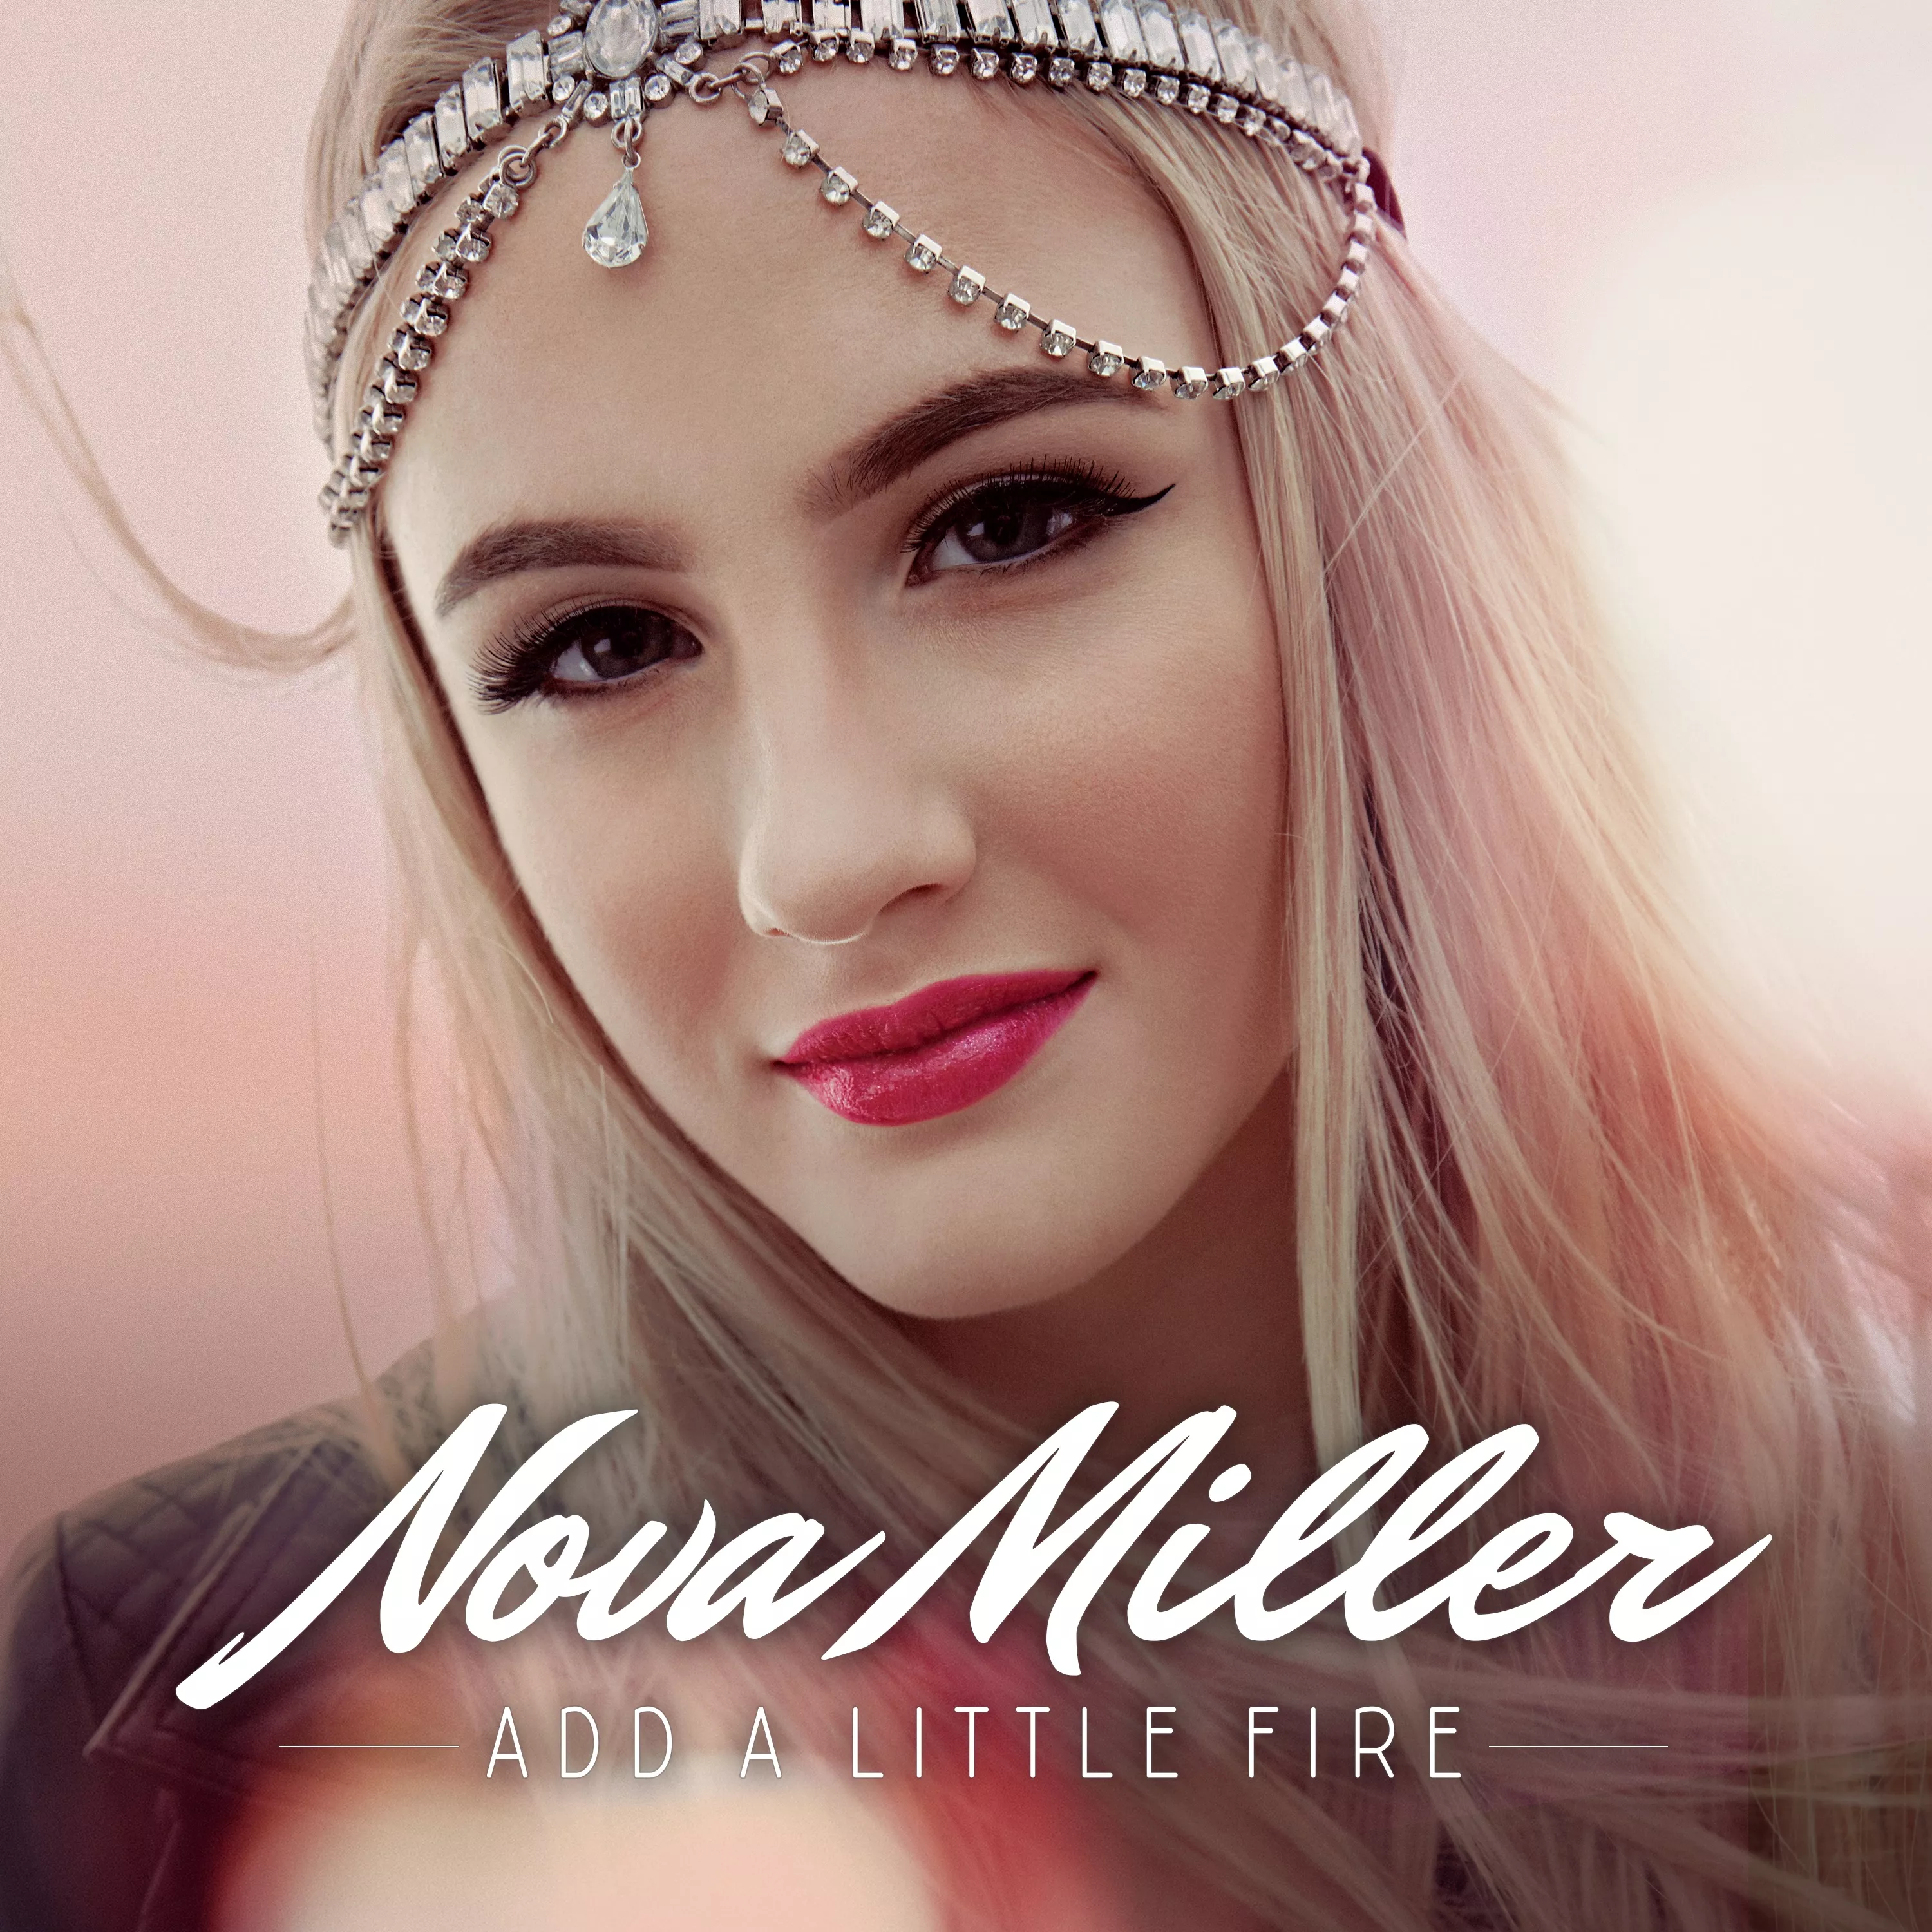 LÅTPREMIÄR: Nova Miller - Add A Little Fire